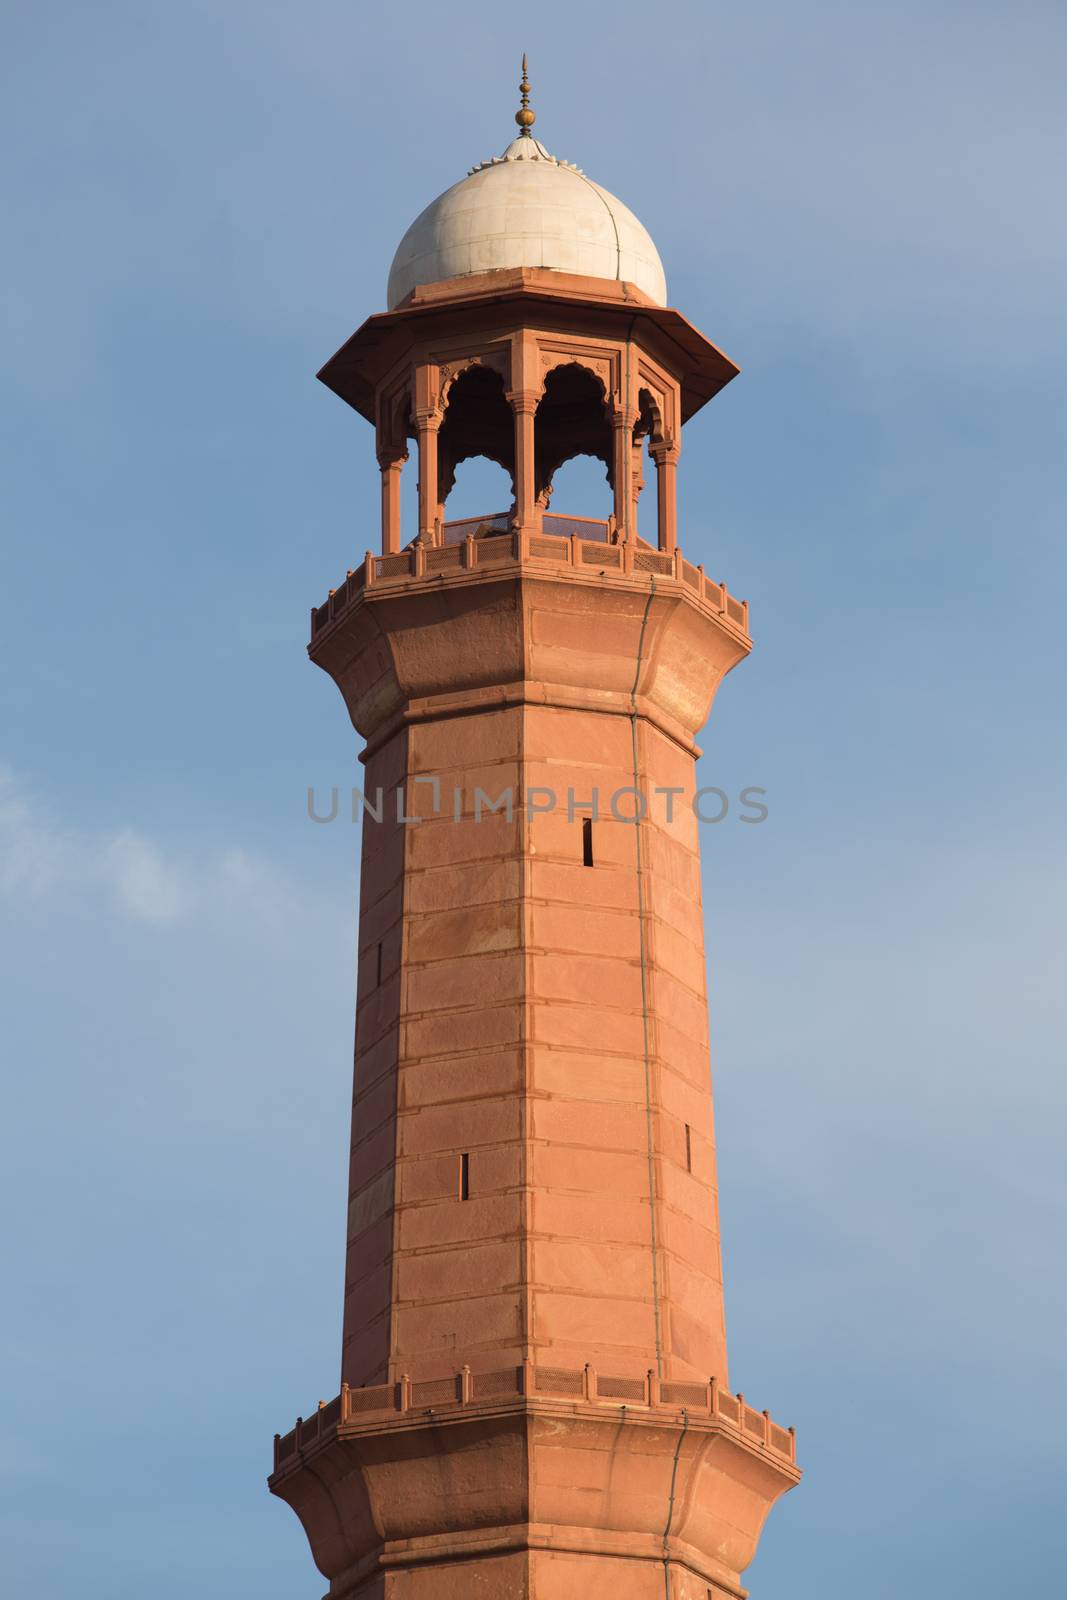 Minaret Tower of calling prayer to muslims by haiderazim